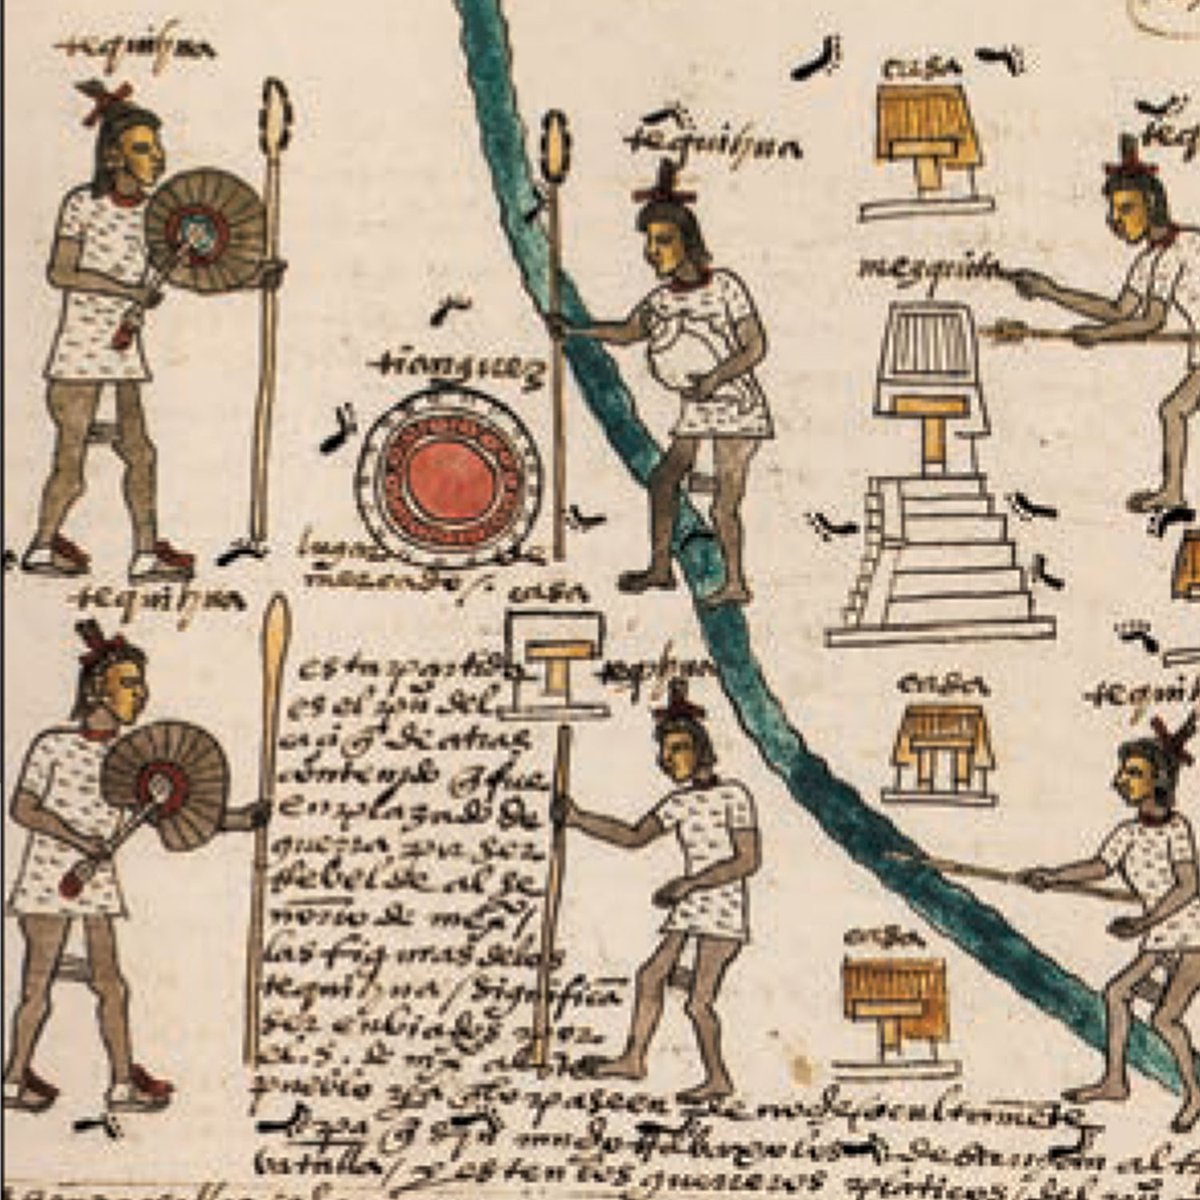 En la sociedad mexica, el rango más alto era detentado por el huey tlatoani o “supremo gobernante”, al cual seguían los tlatoque (plural de tlatoani) subordinados, los teteuctin (“señores”), los tequihuaque (“capitanes”), y los sacerdotes (tlenamacaque y tlamacazque).